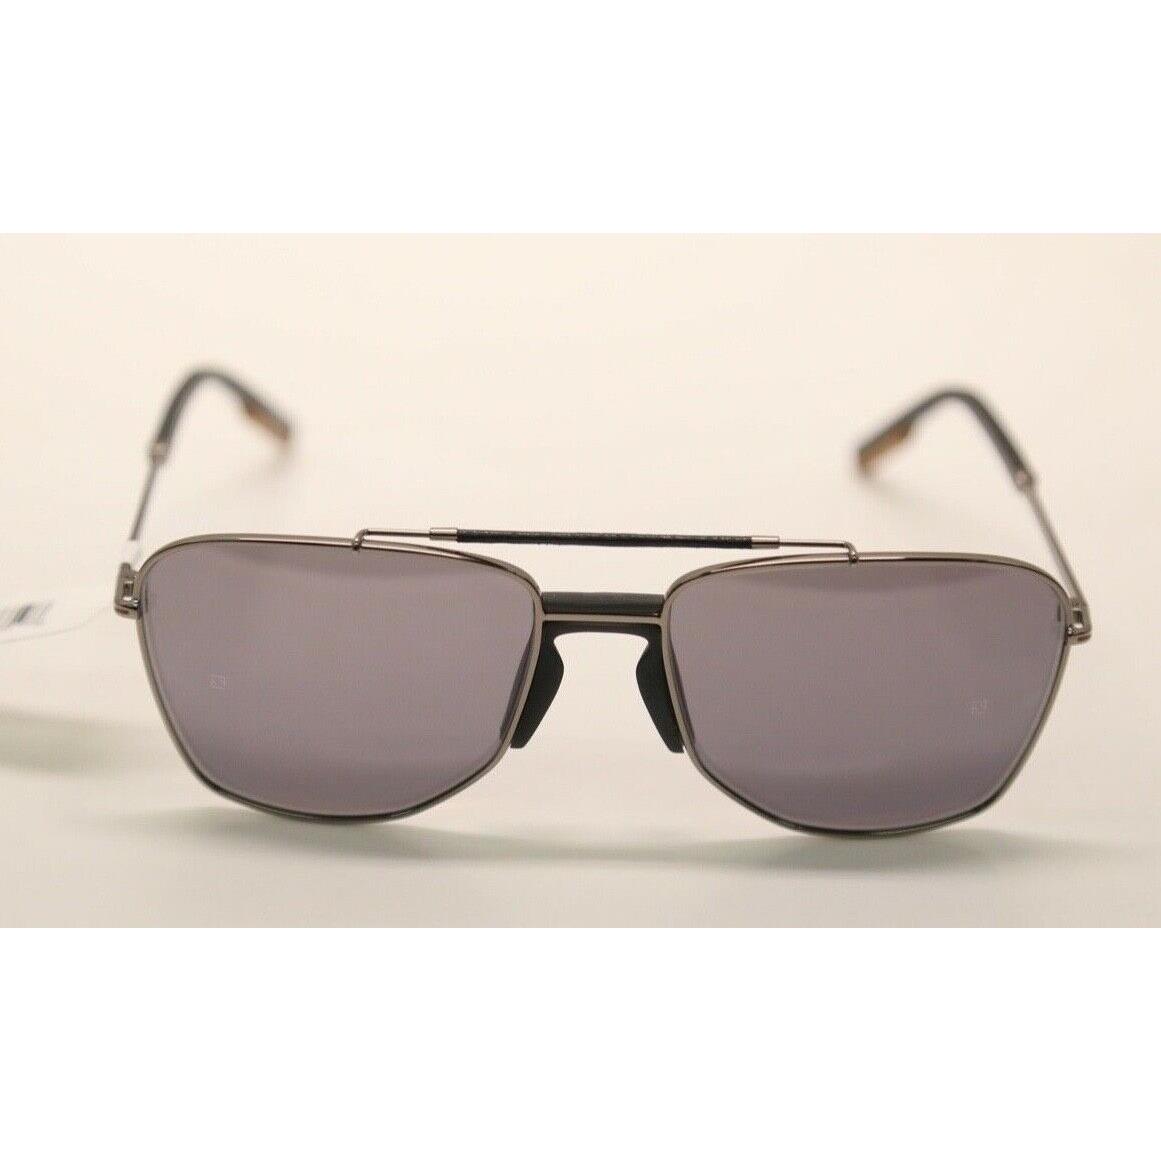 Ermenegildo Zegna EZ0130 08N Grey/grey Lens Sunglasses 982